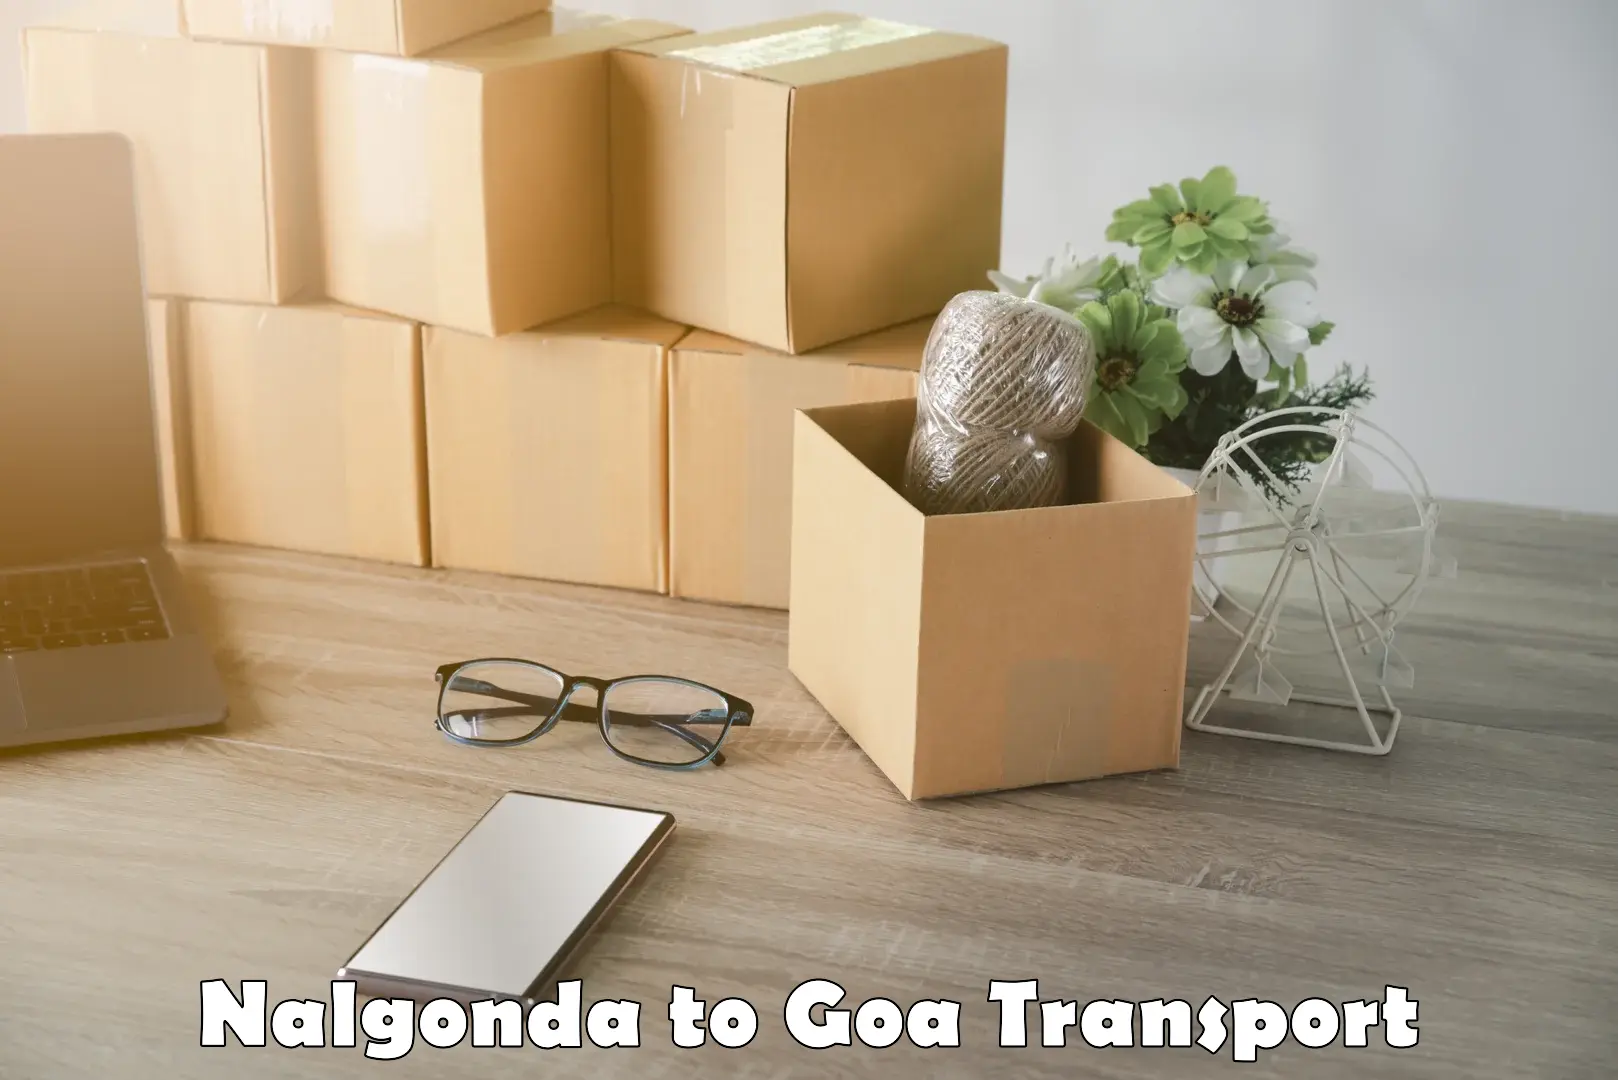 Transport in sharing in Nalgonda to Vasco da Gama